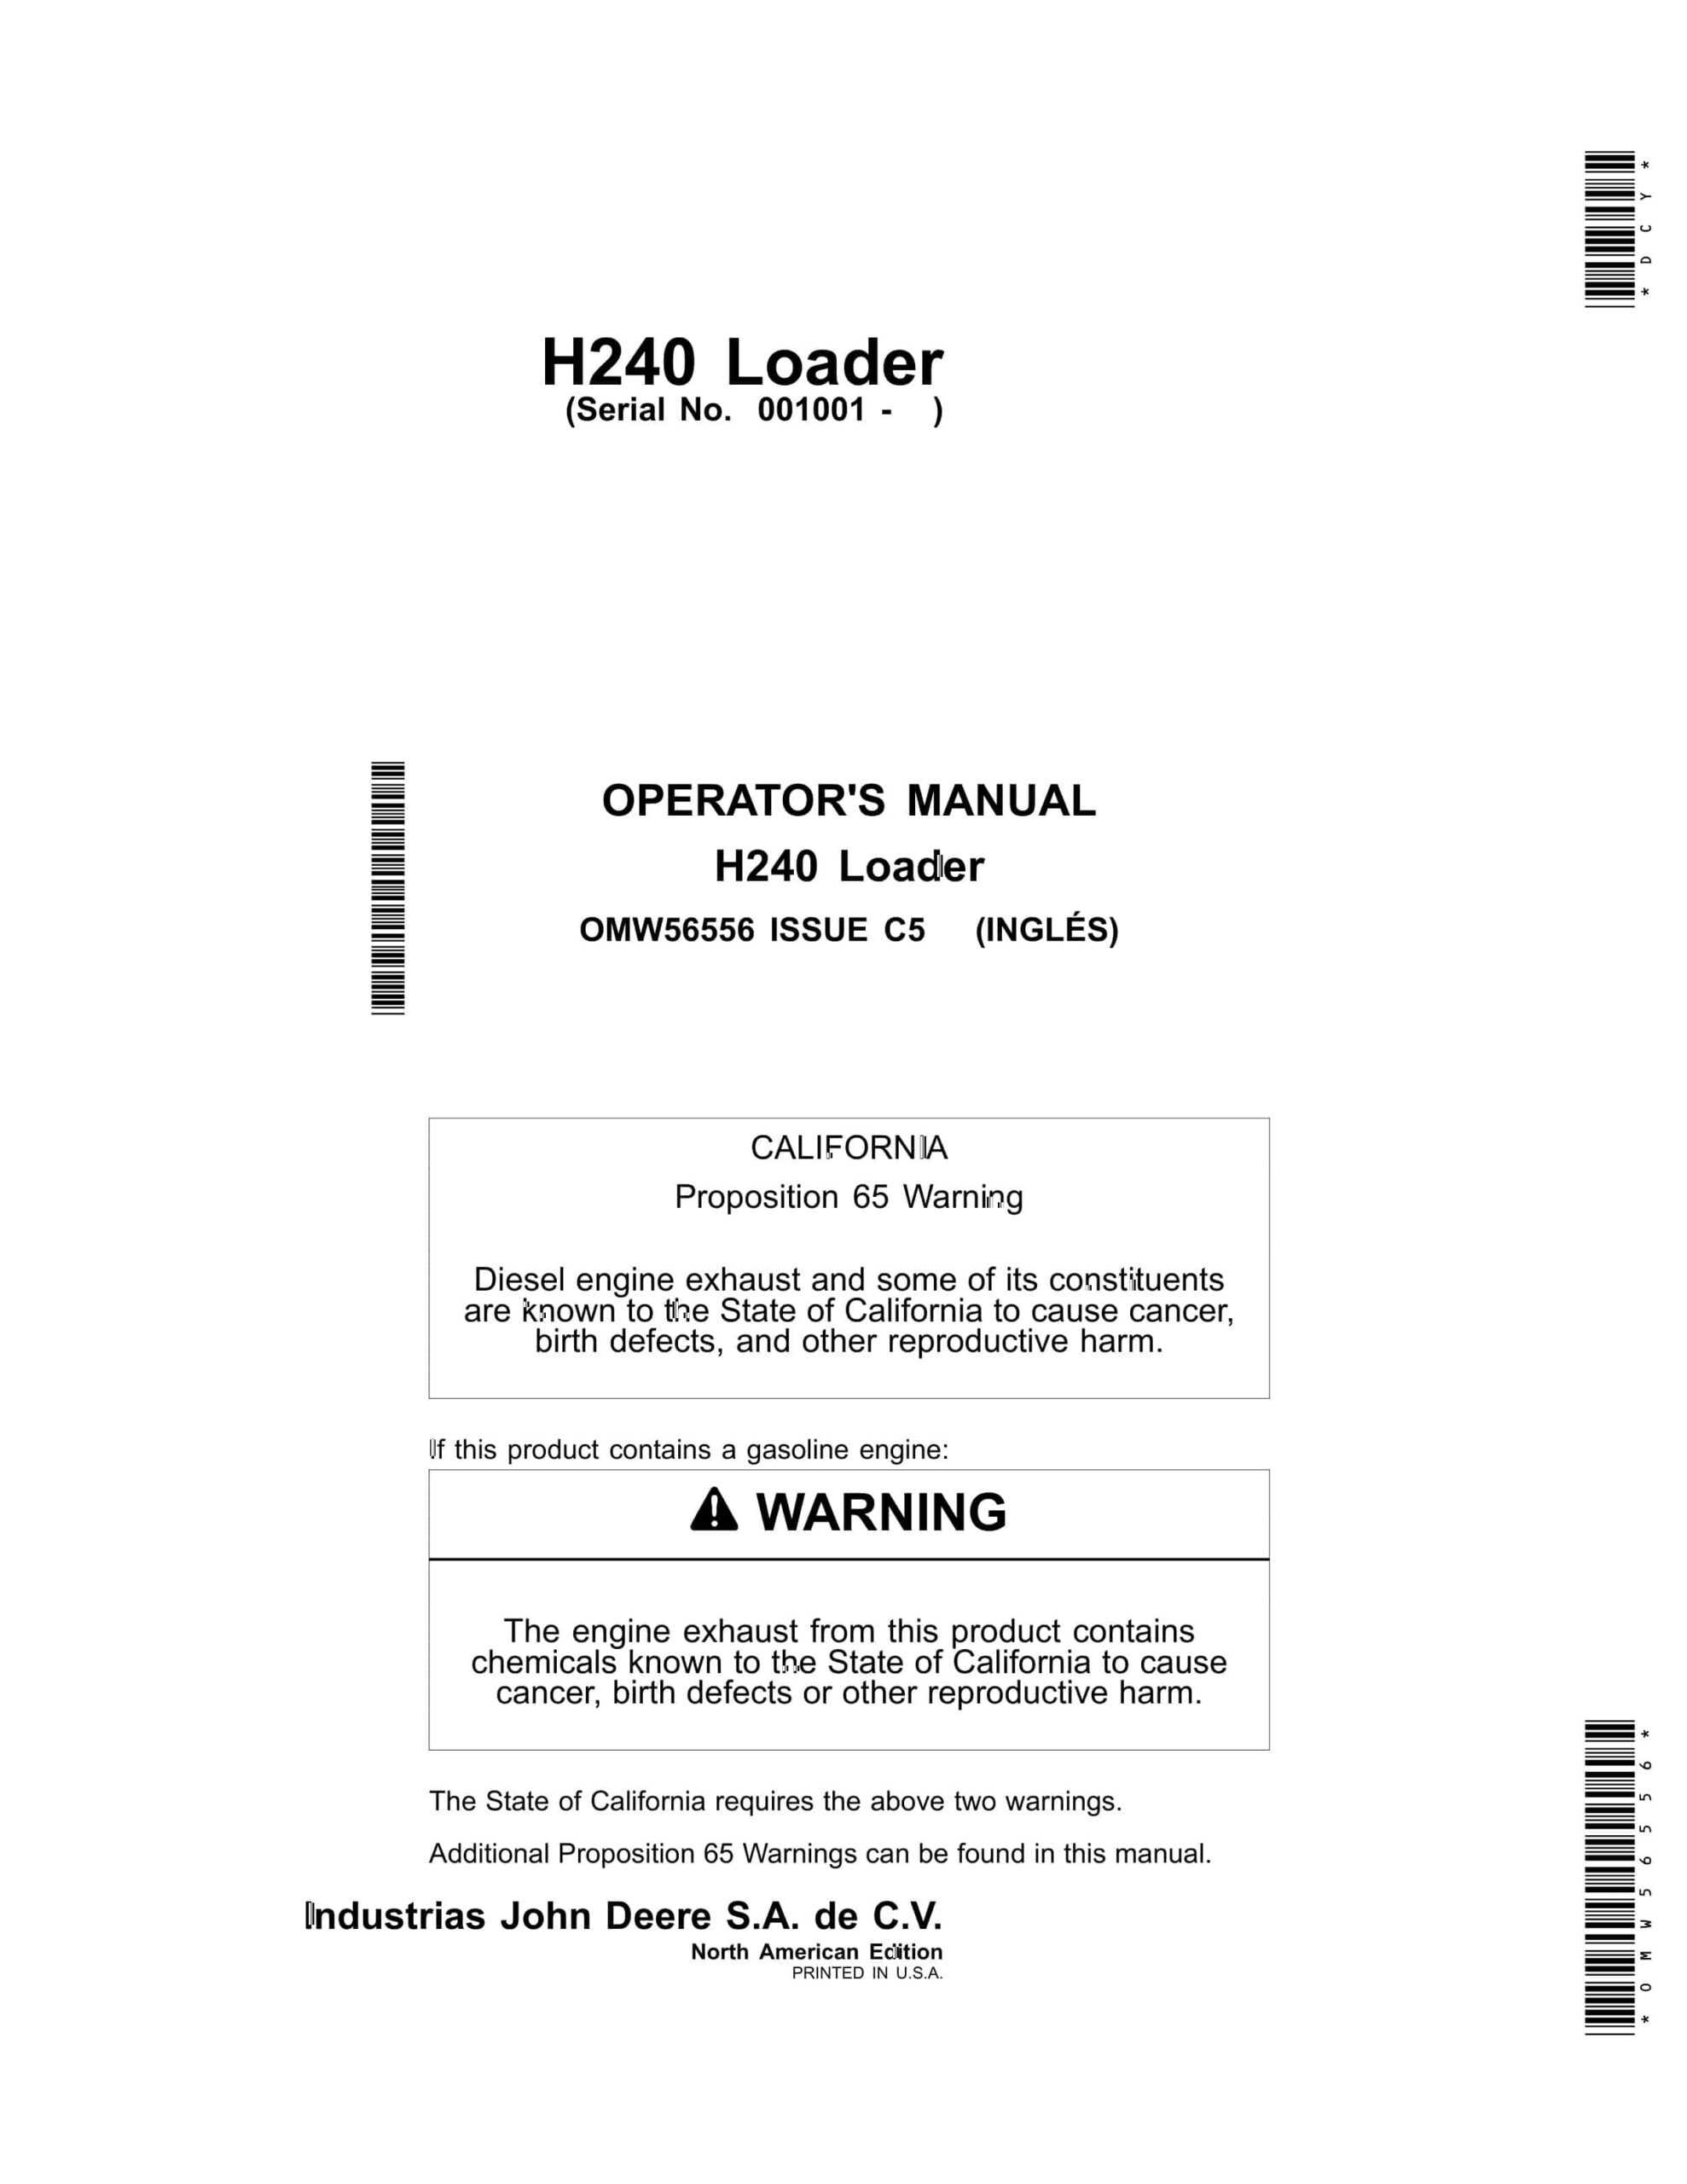 John Deere H240 Loader Operator Manual OMW56556-1